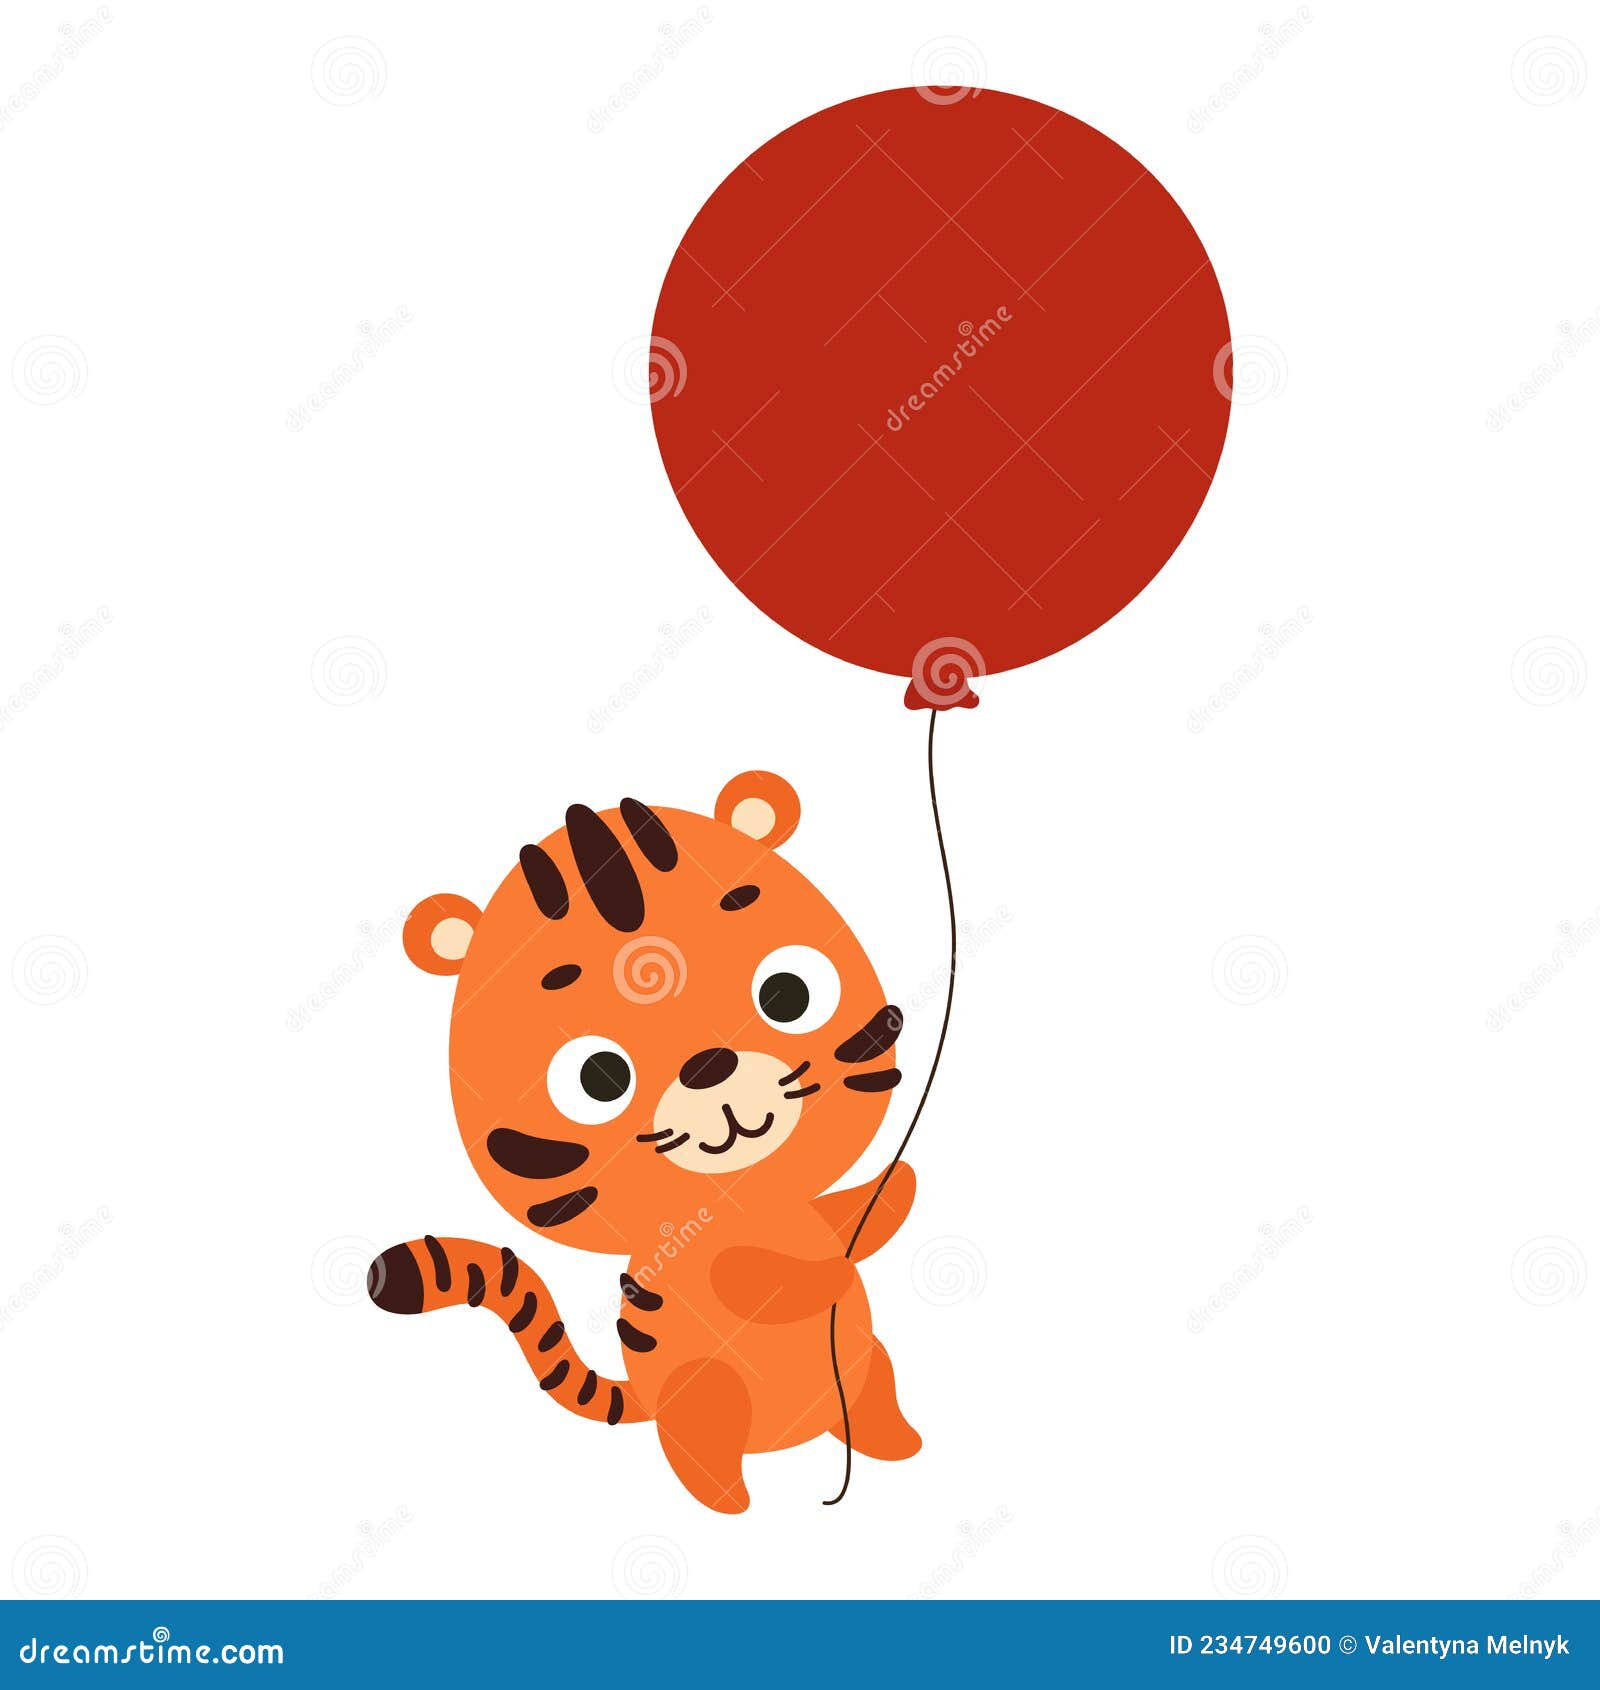 personagem de desenho animado de lobo fofo voar com balão de ar no